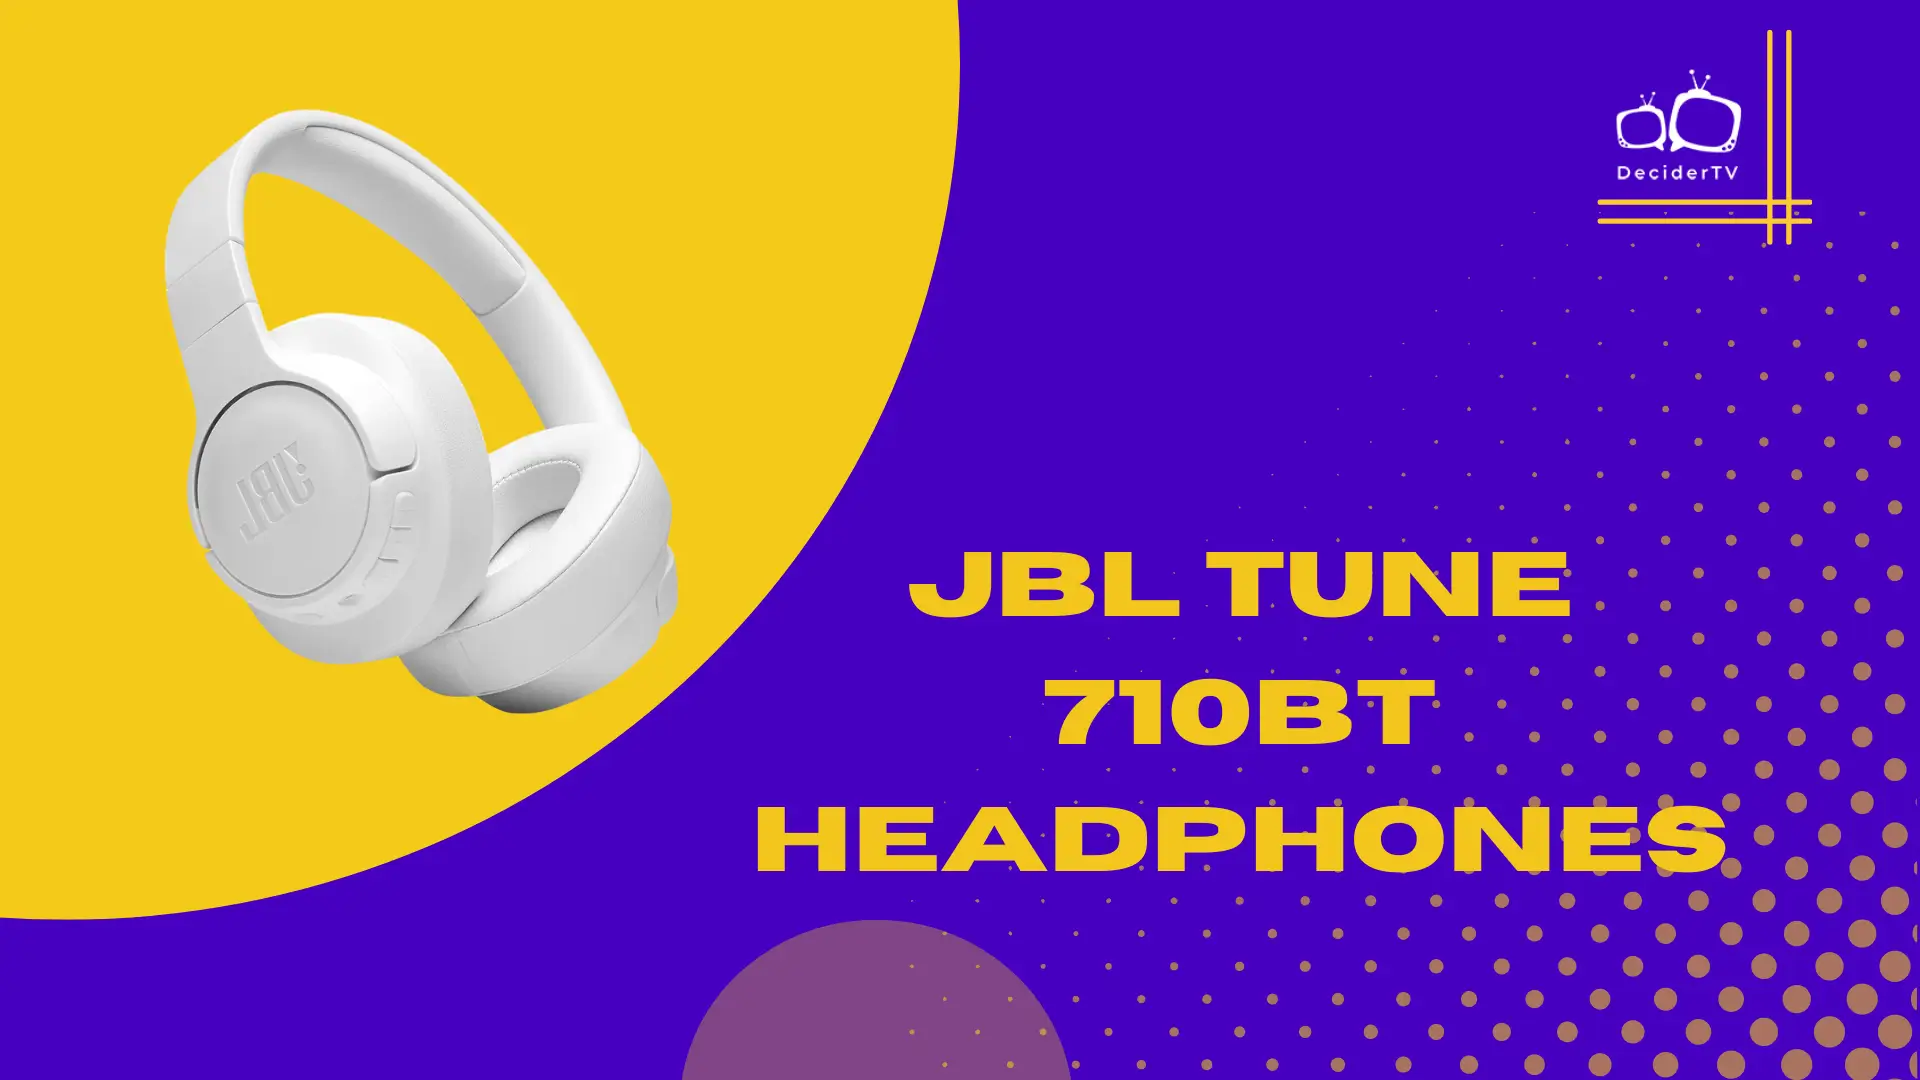 JBL Tune 710BT